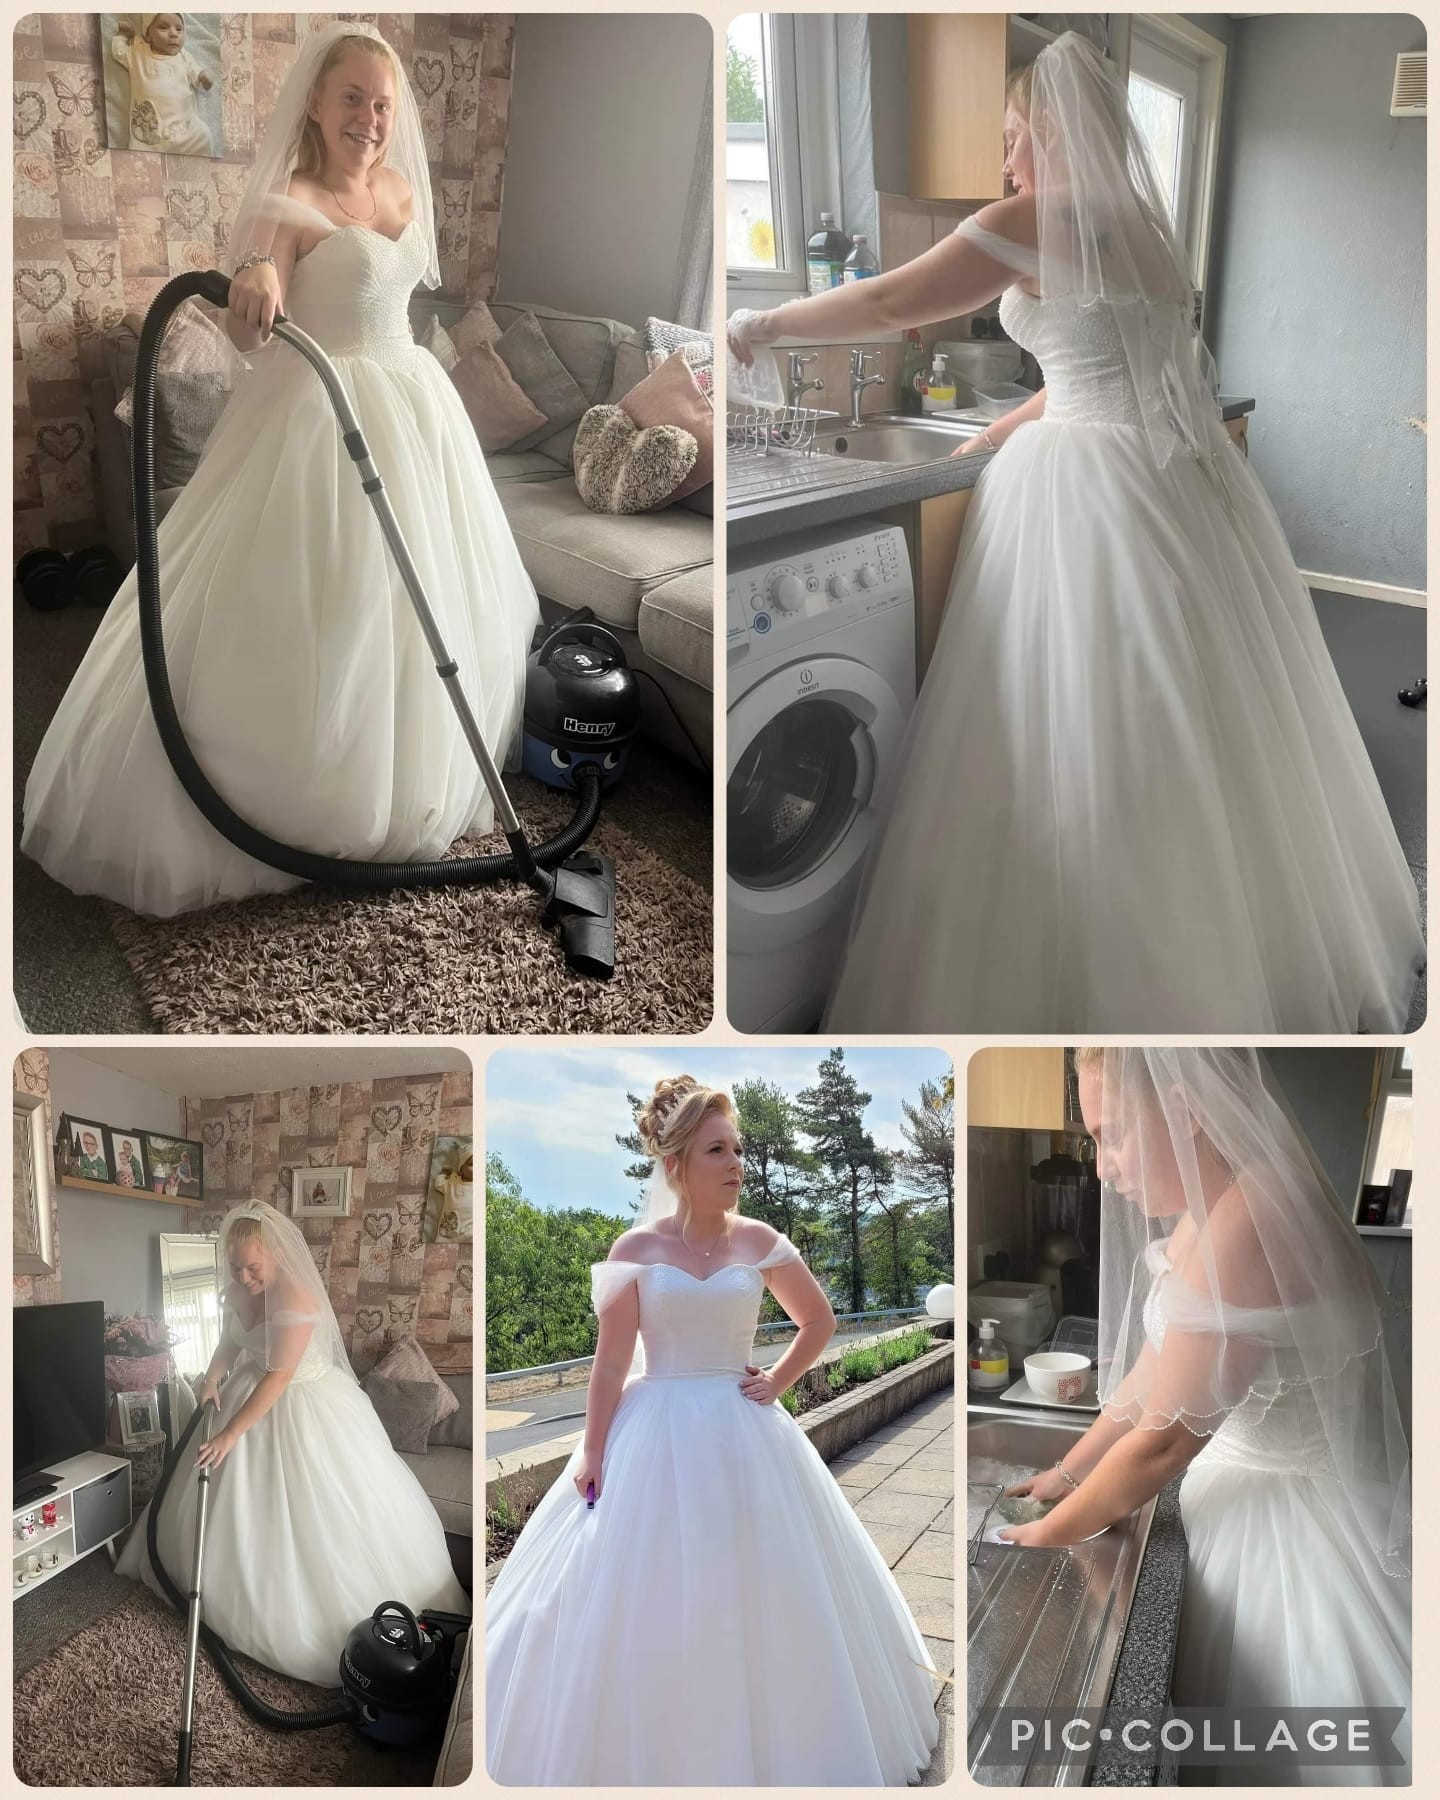 Mãe posta fotos fazendo tarefas do dia a dia com vestido de noiva (Foto: Reprodução/Facebook/Alison B M Patterson)